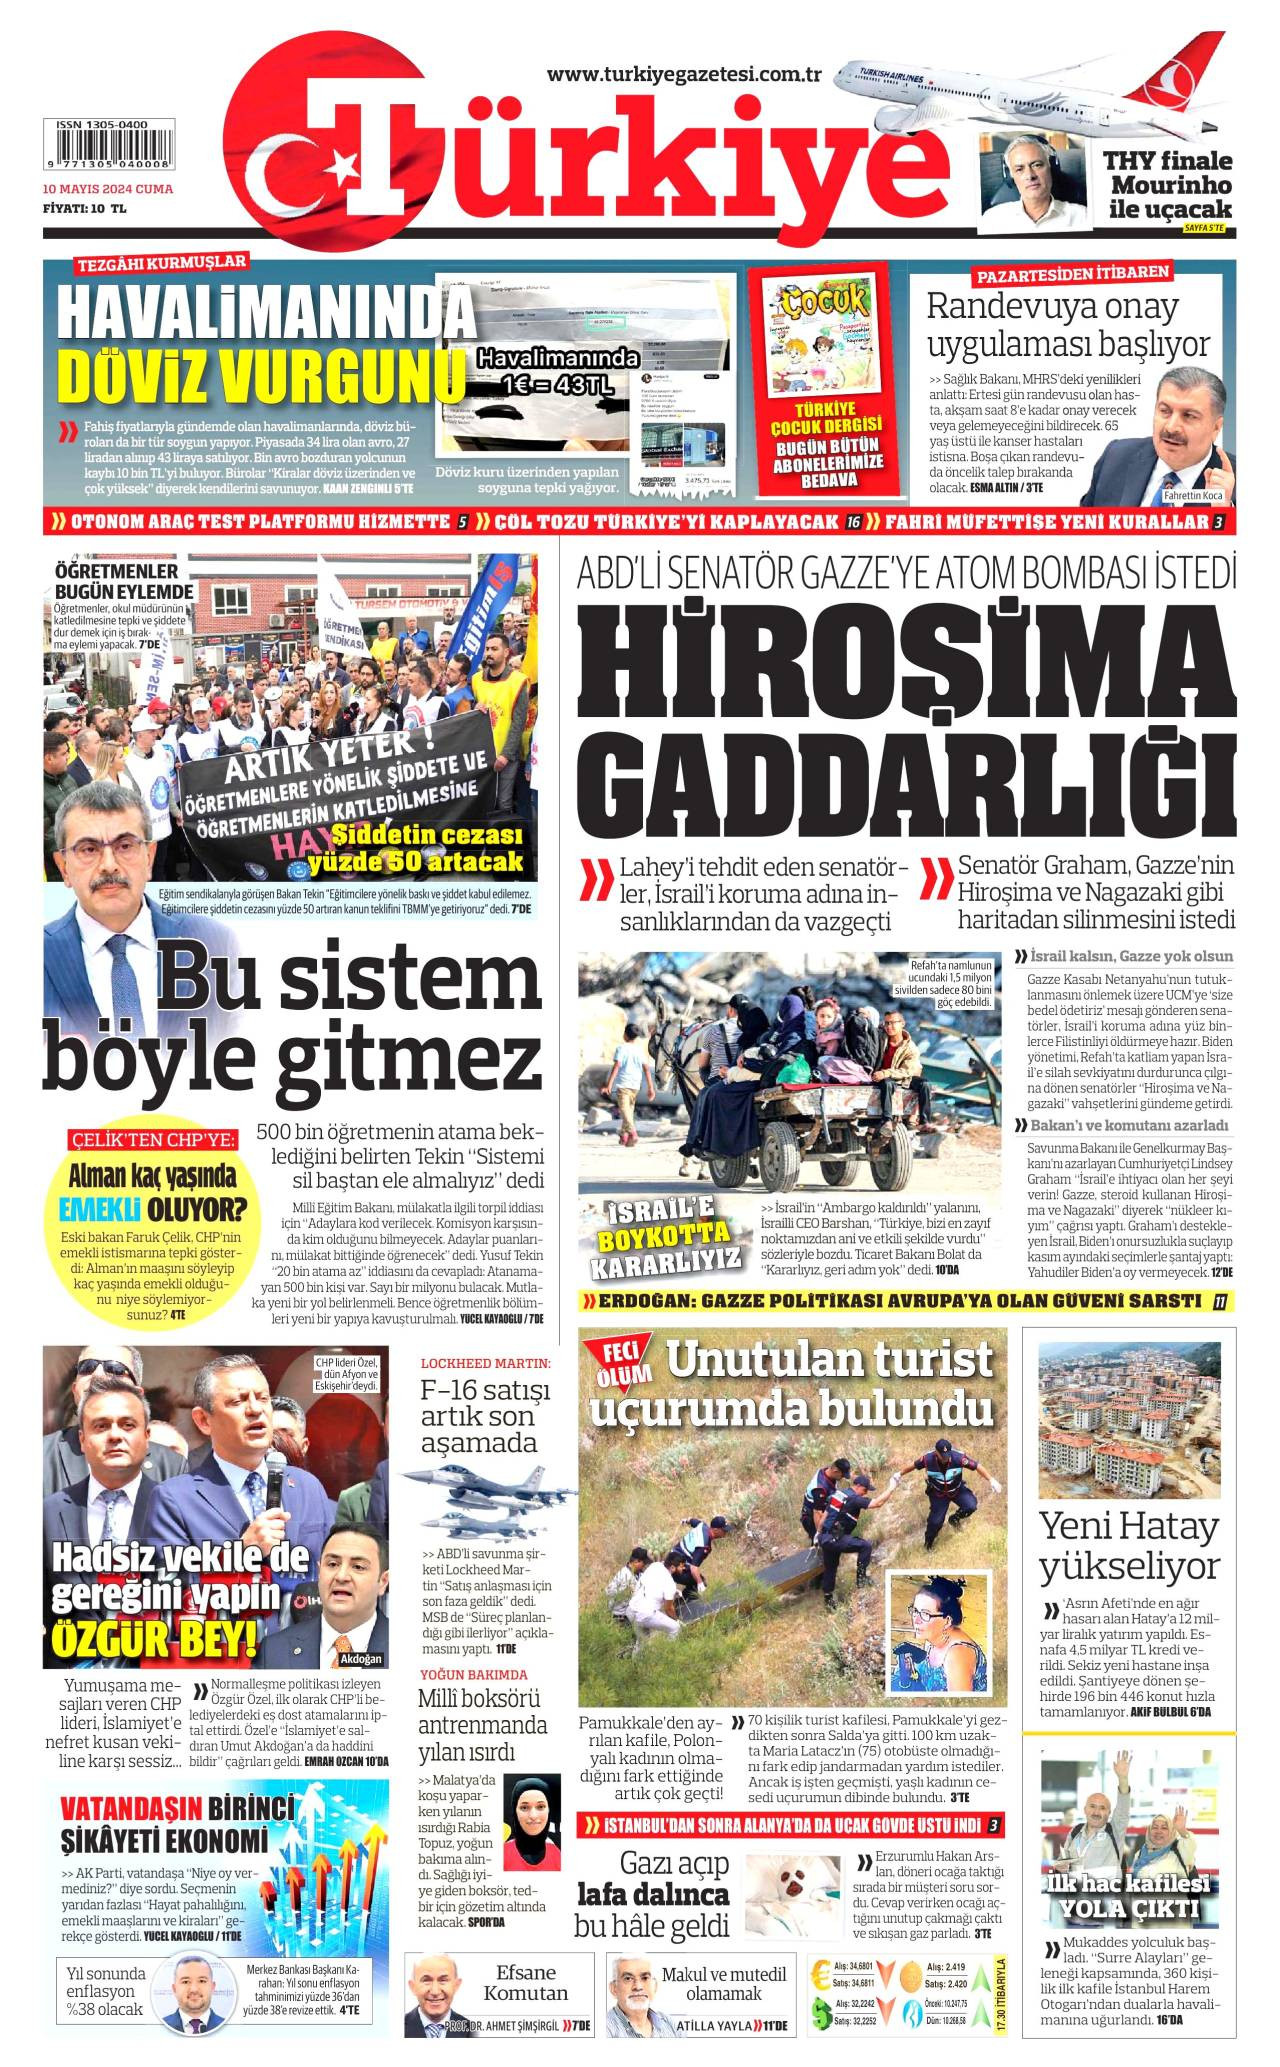  turkiye Gazetesi